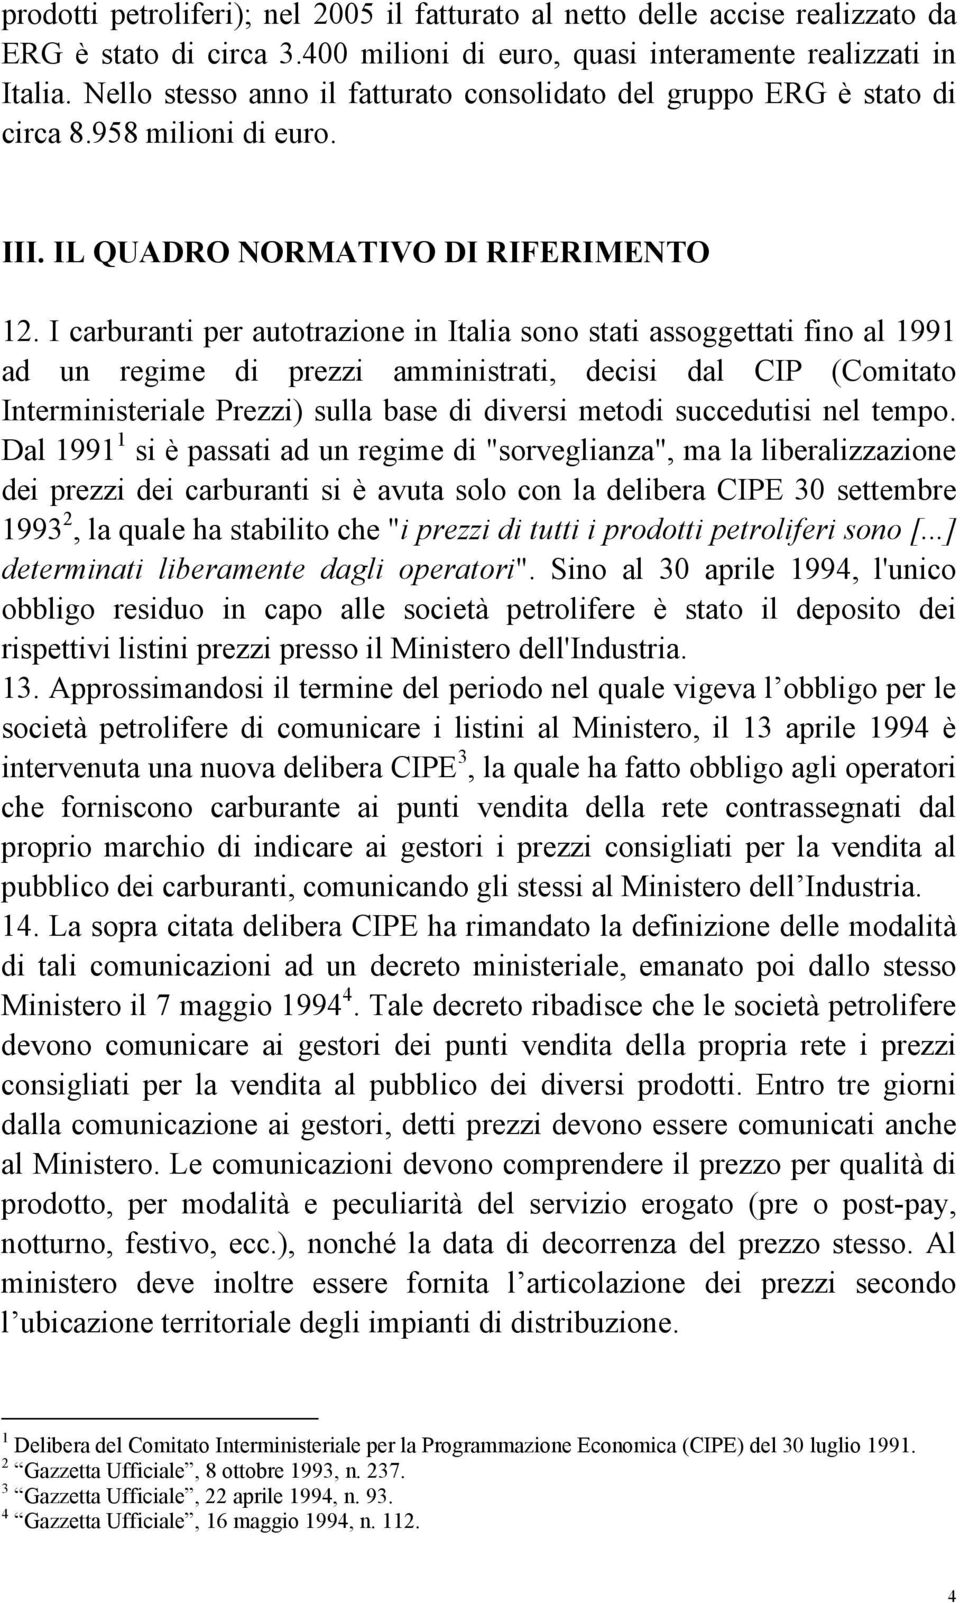 I carburanti per autotrazione in Italia sono stati assoggettati fino al 1991 ad un regime di prezzi amministrati, decisi dal CIP (Comitato Interministeriale Prezzi) sulla base di diversi metodi